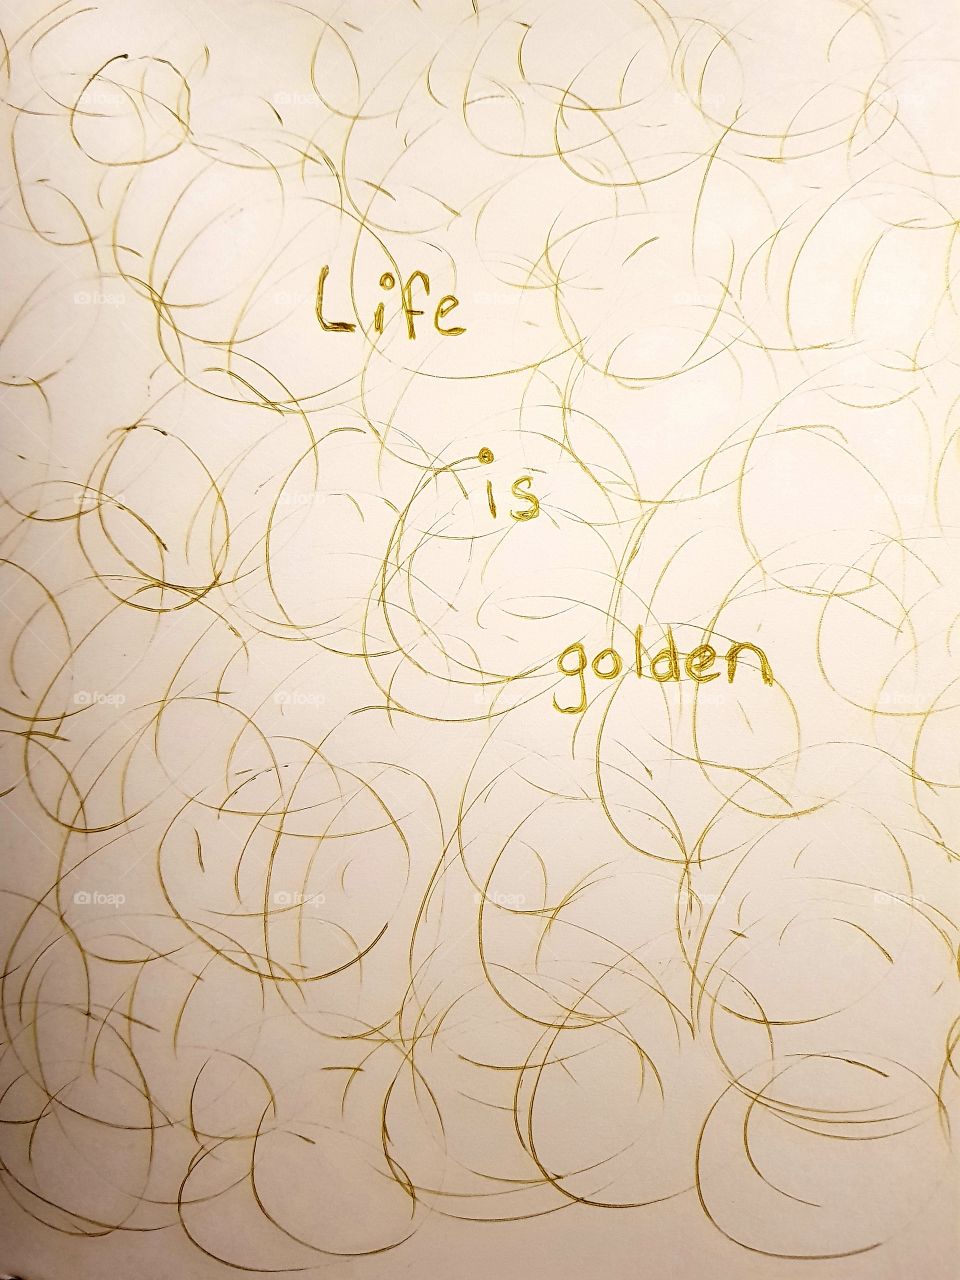 Life is golden